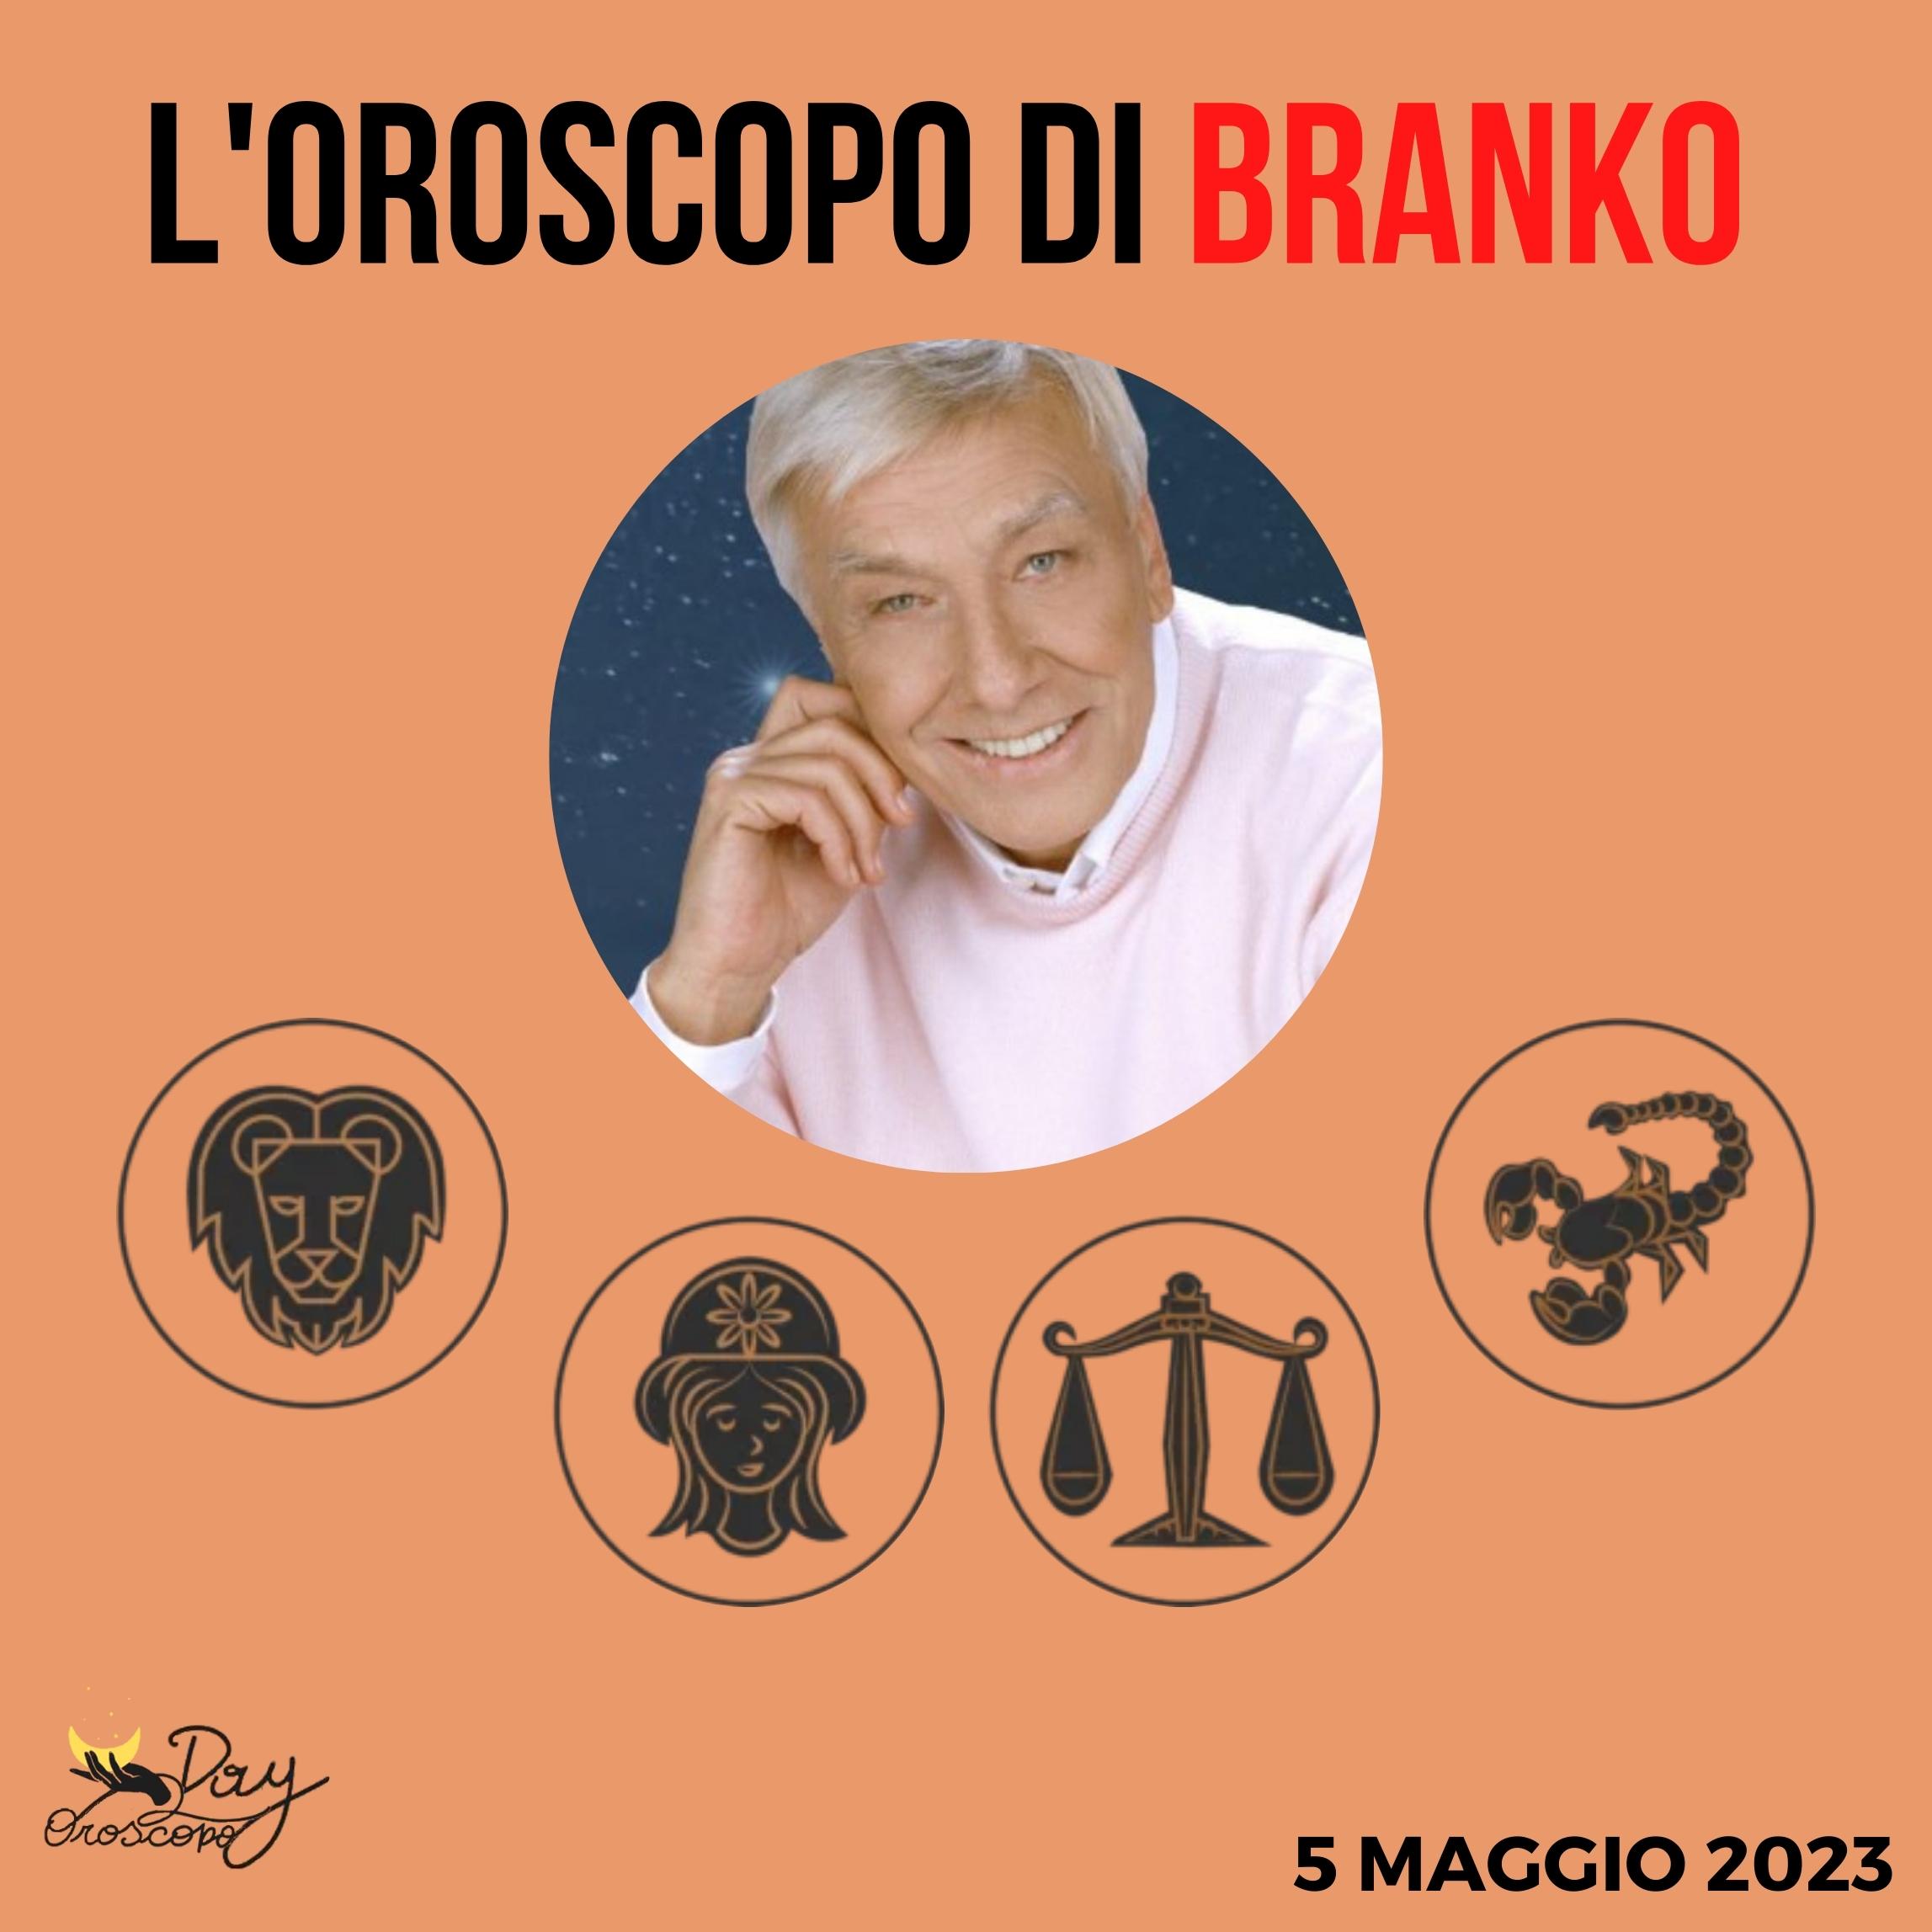 Oroscopo oggi domani Branko 5 maggio Leone Vergine Bilancia Scorpione